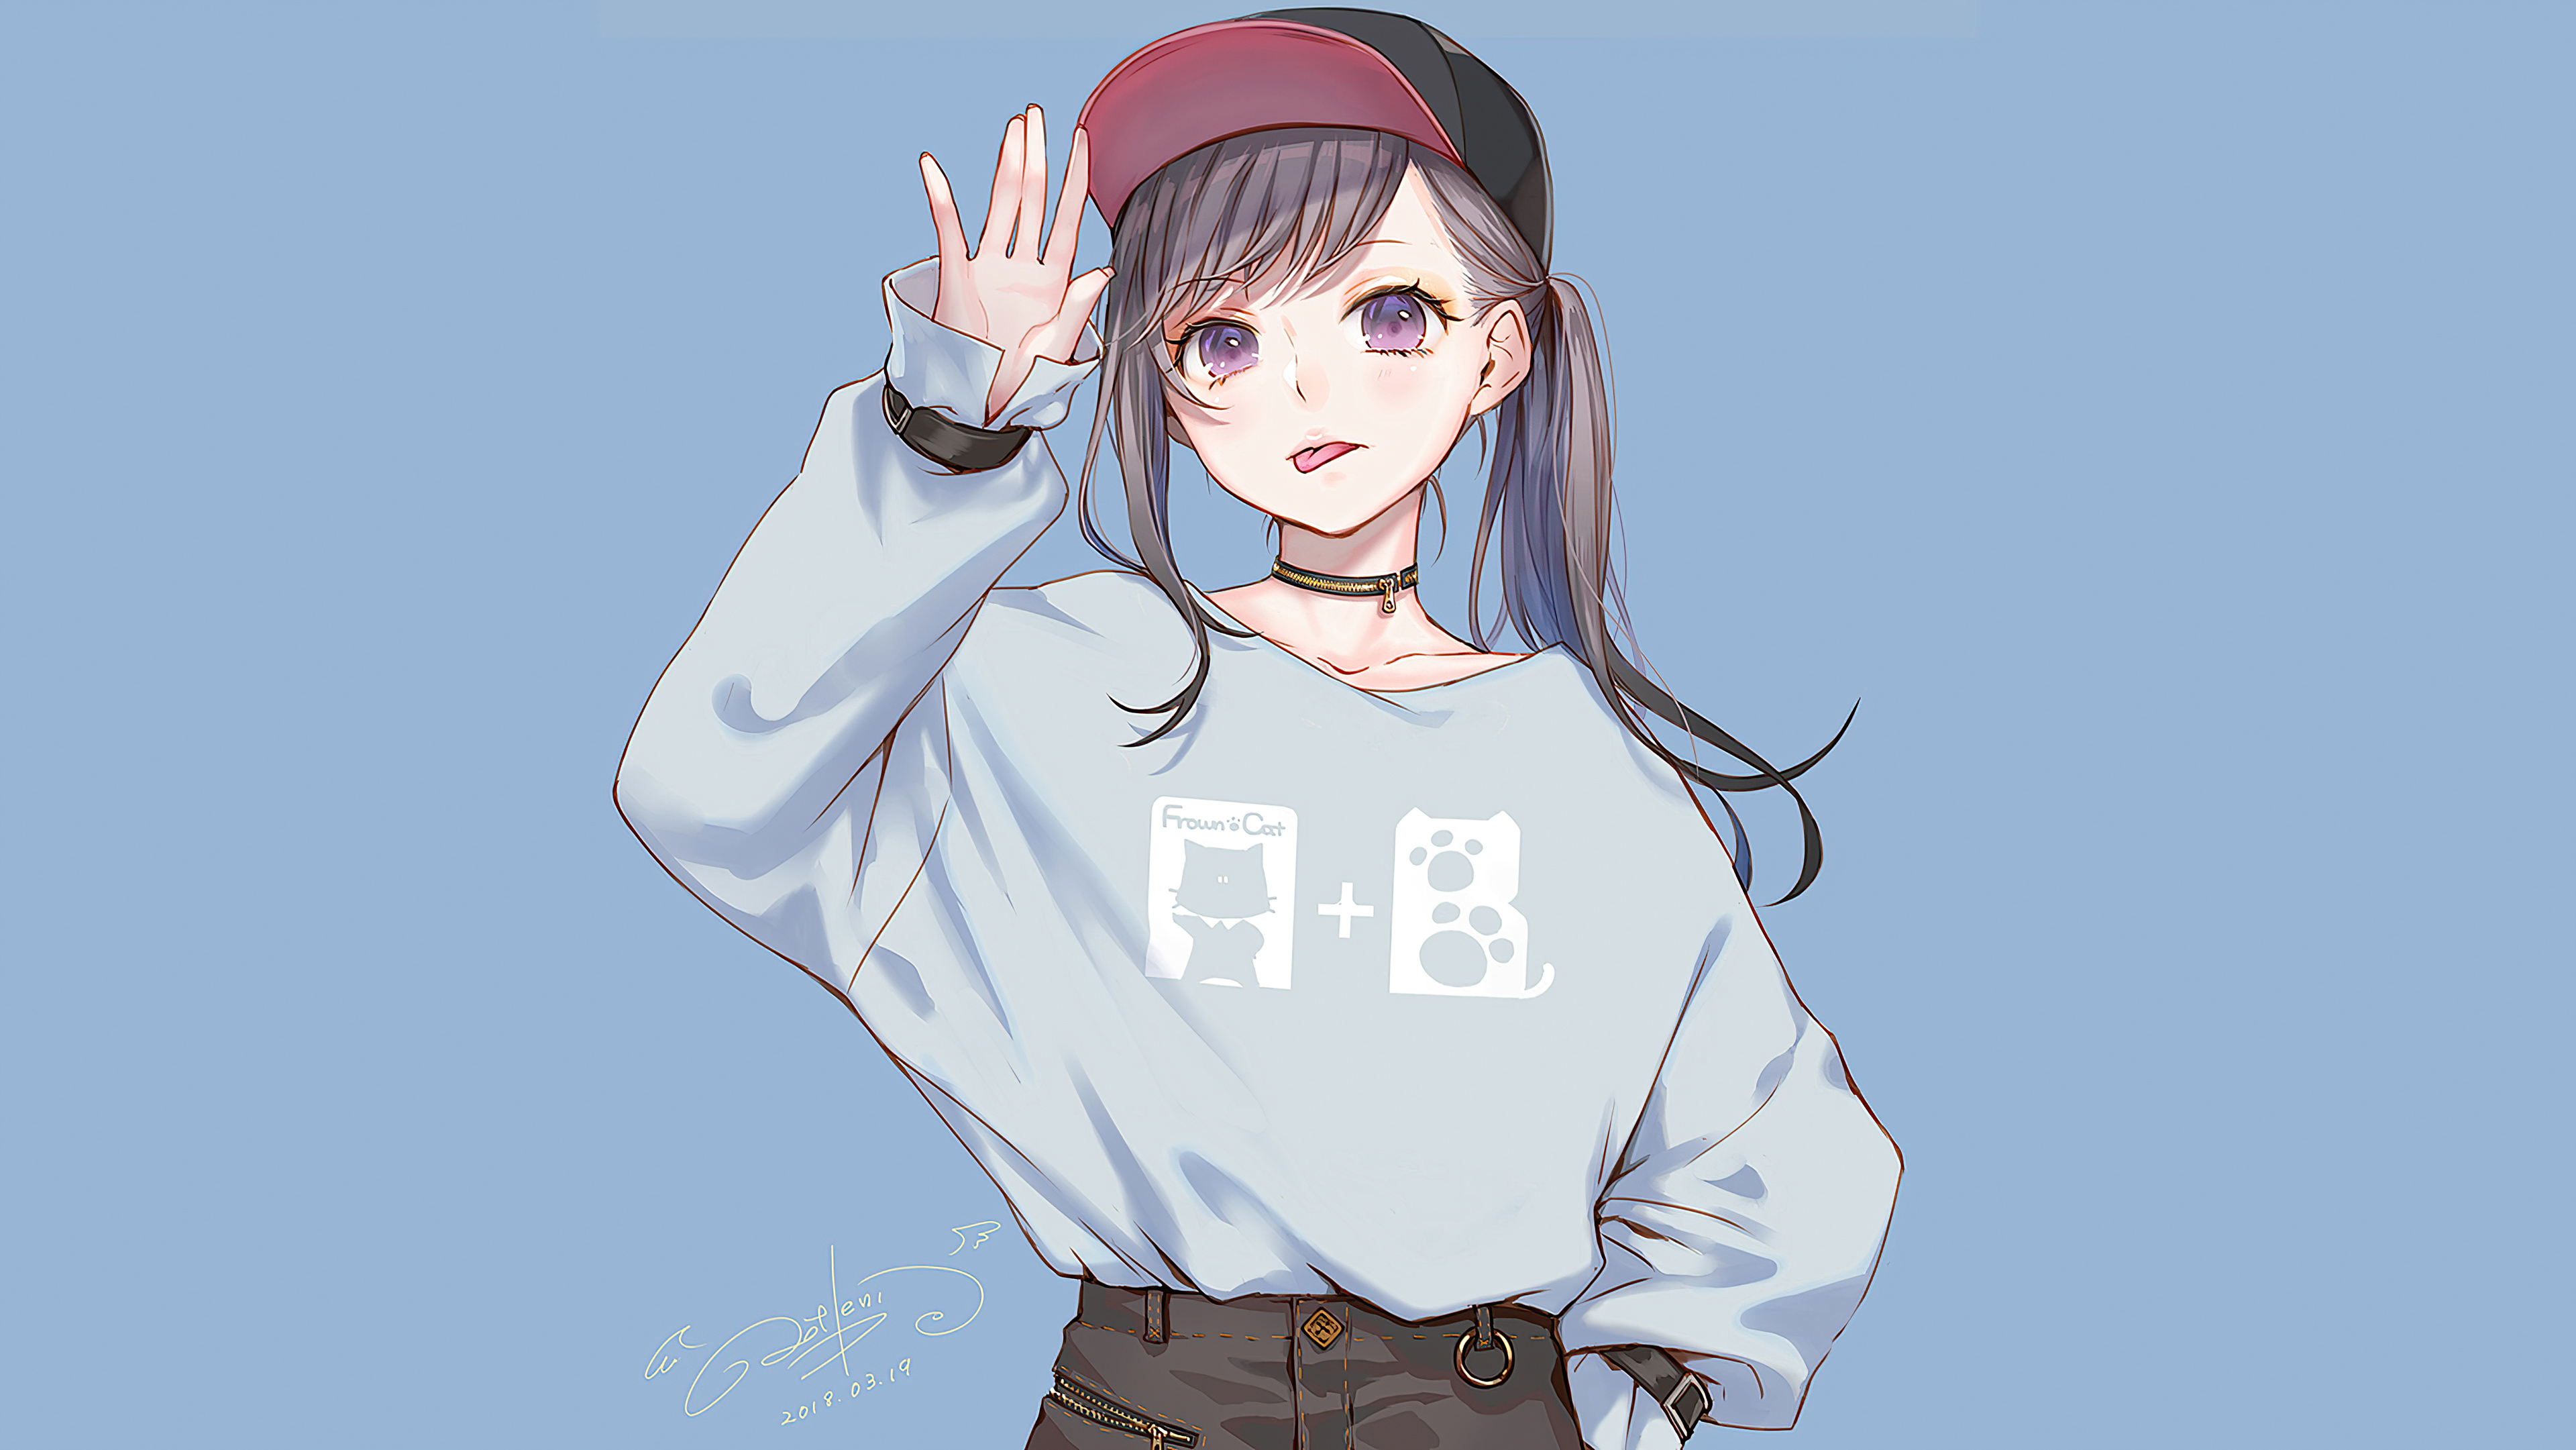 Anime Girl Sweater